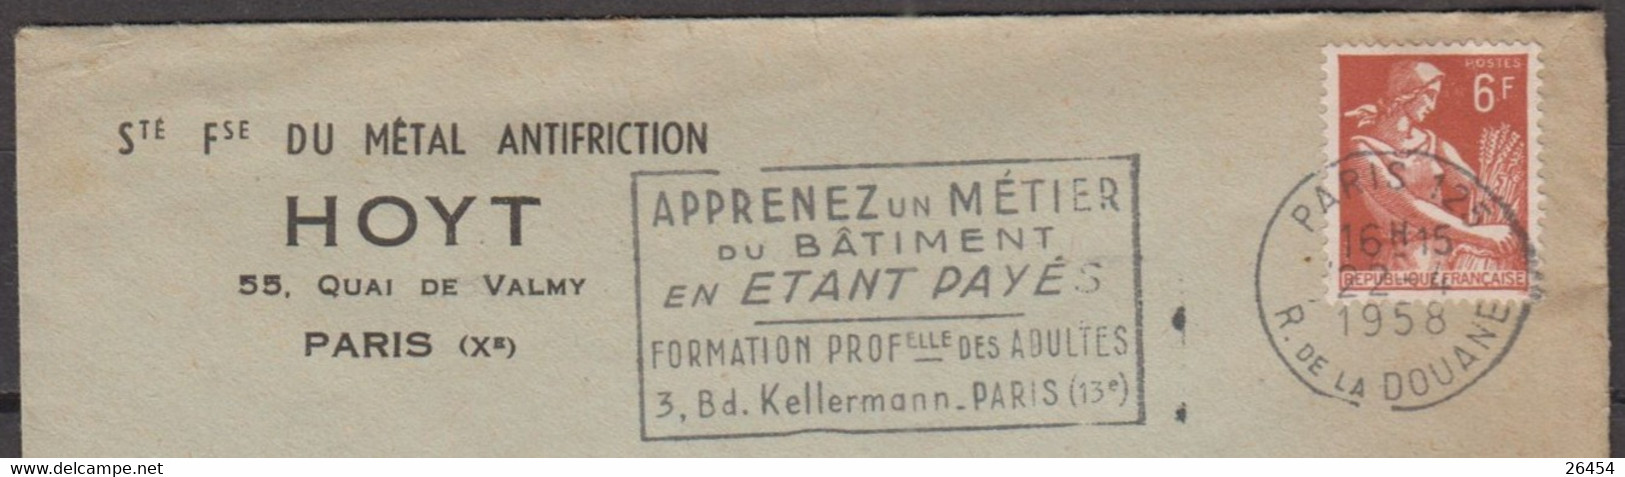 Moissonneuse  6F Sur Enveloppe Pub " Sté Fse Du METAL ANTIFRICTION " De PARIS X Le 22 4 1958 Avec Sécap De PARIS 125 - 1957-1959 Oogst